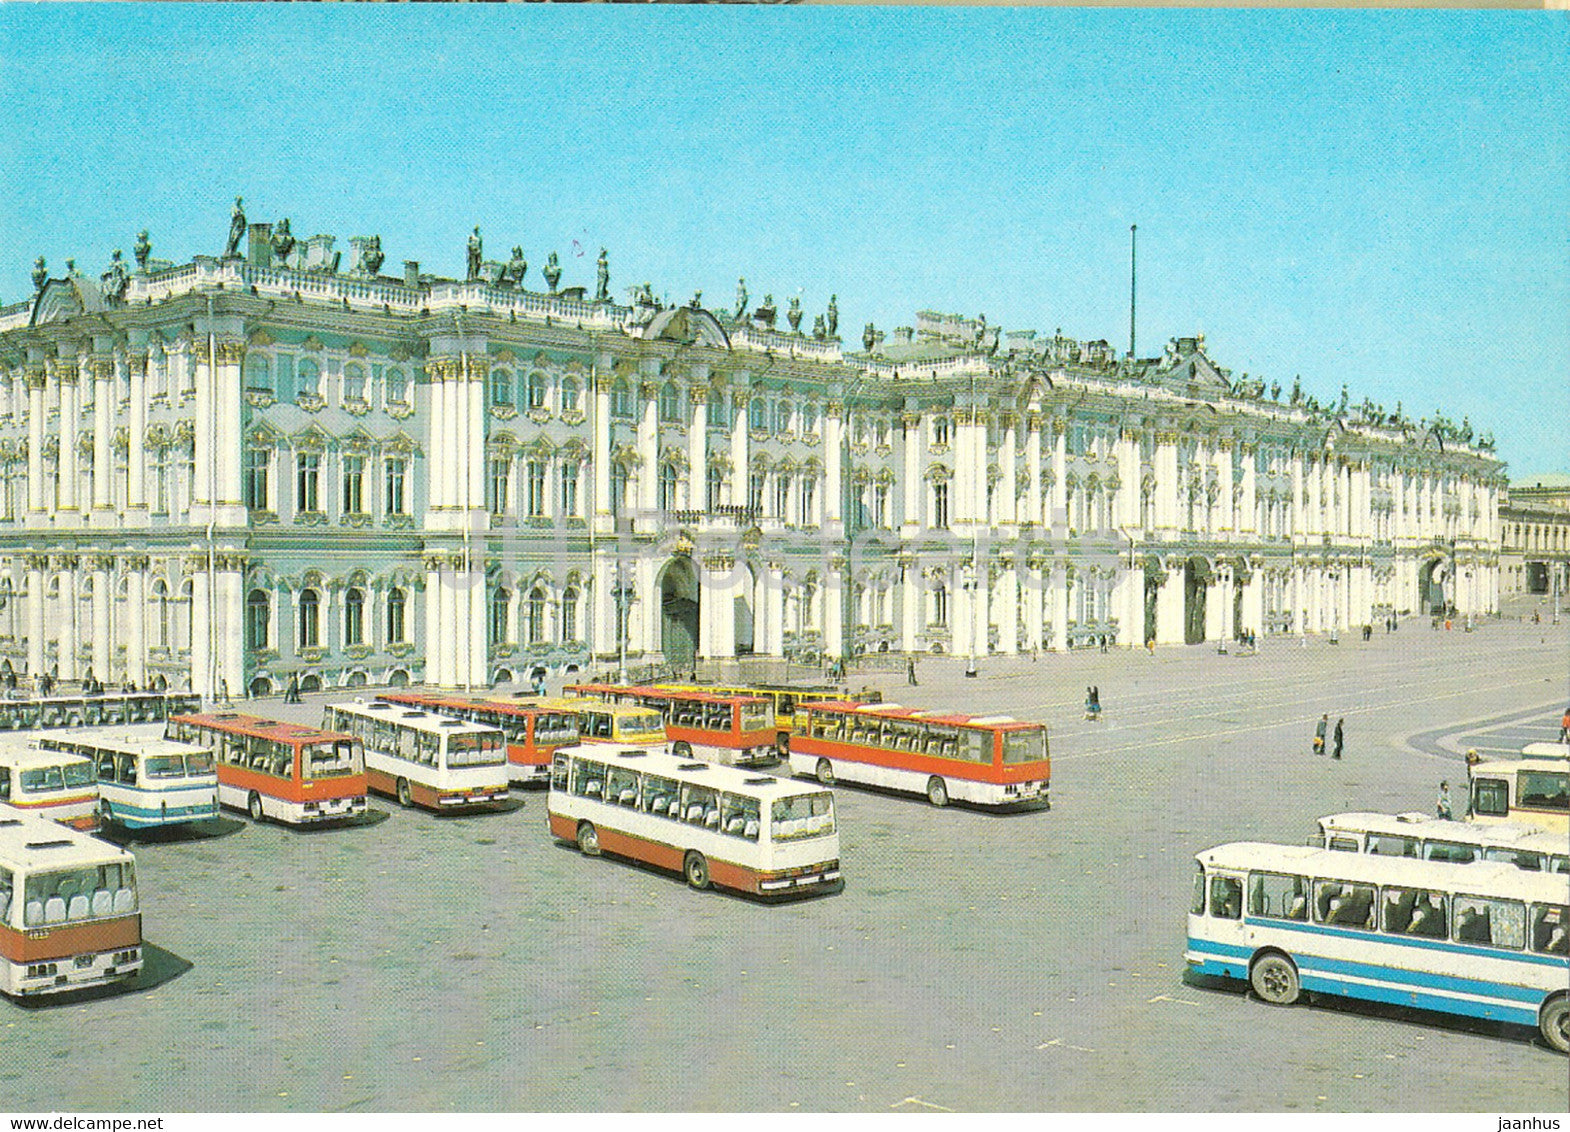 Leningrad - St Petersburg - Winter Palace - Hermitage - bus Ikarus - postal stationery - 1985 - Russia USSR - unused - JH Postcards